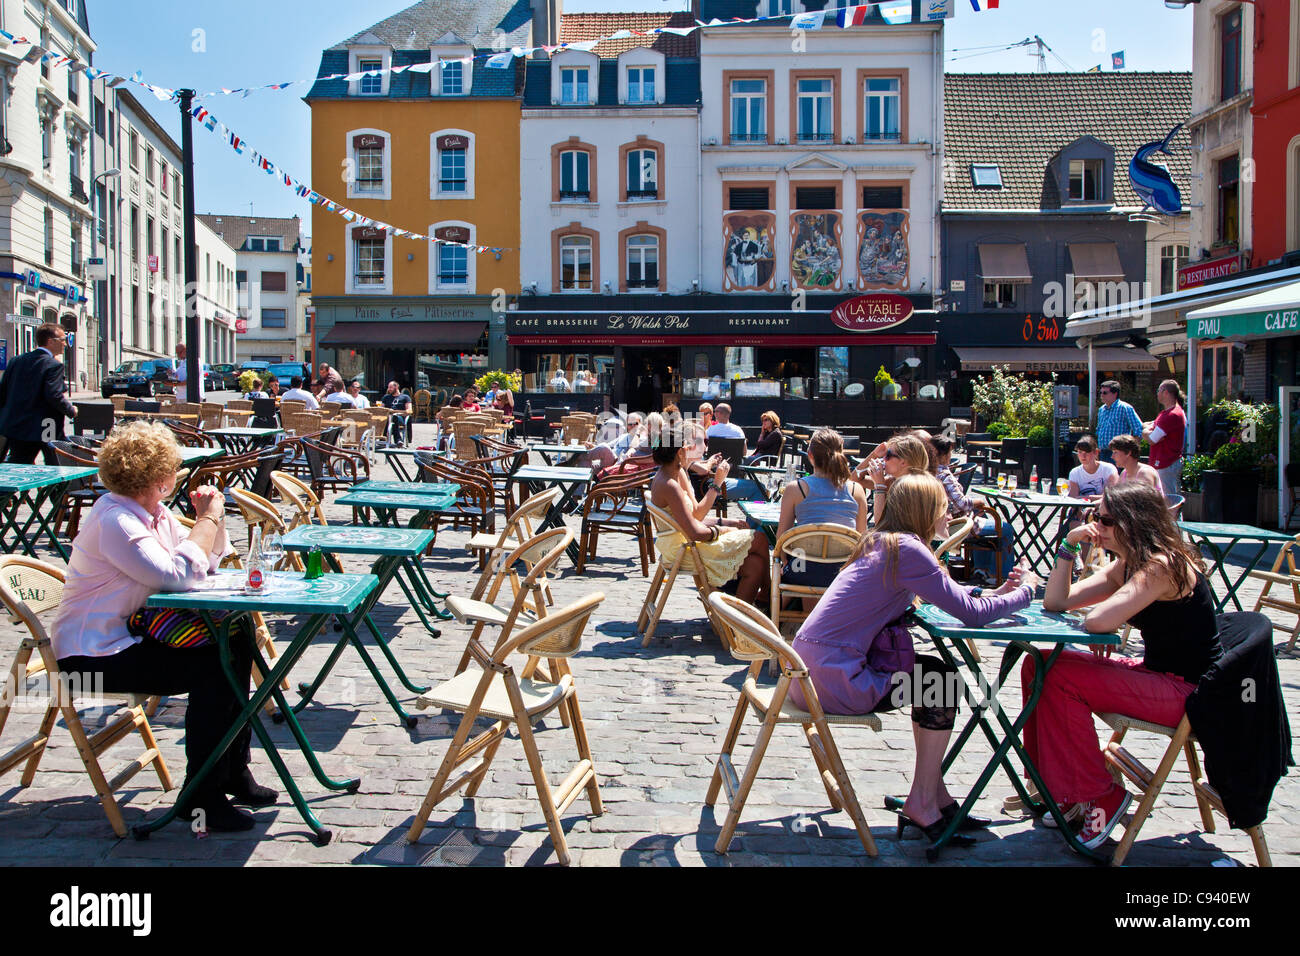 La gente disfruta del sol y charlando en cafés al aire libre en el lugar Dalton en Boulogne, Francia Foto de stock